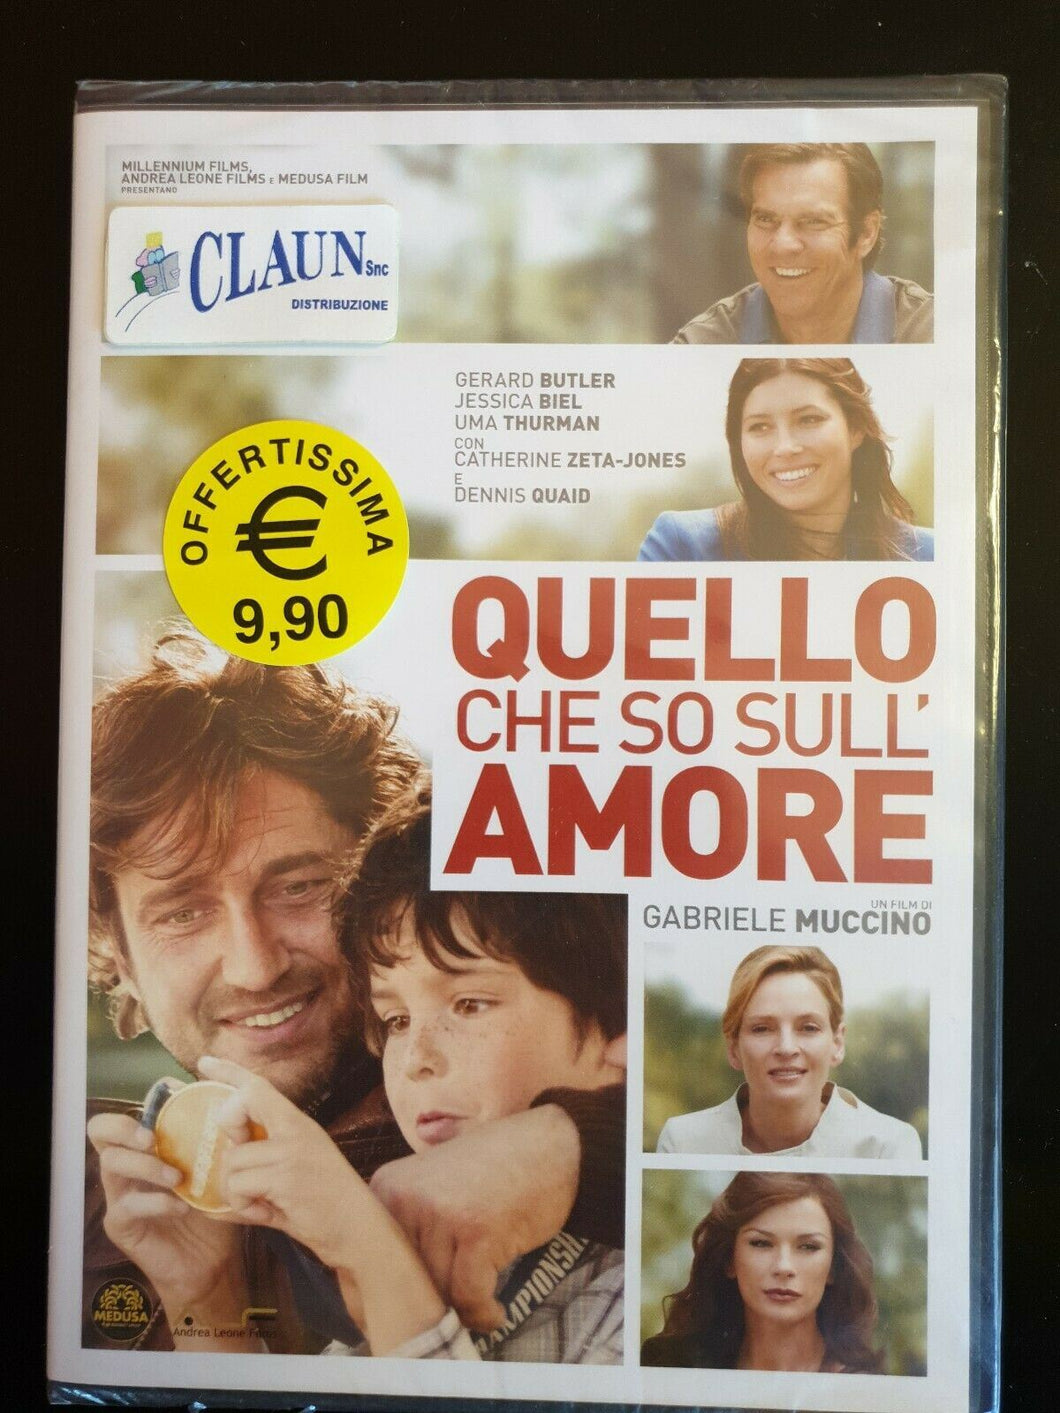 QUELLO CHE SO SULL'AMORE DI GABRIELE MUCCINO (DVD) NUOVO, ITALIANO